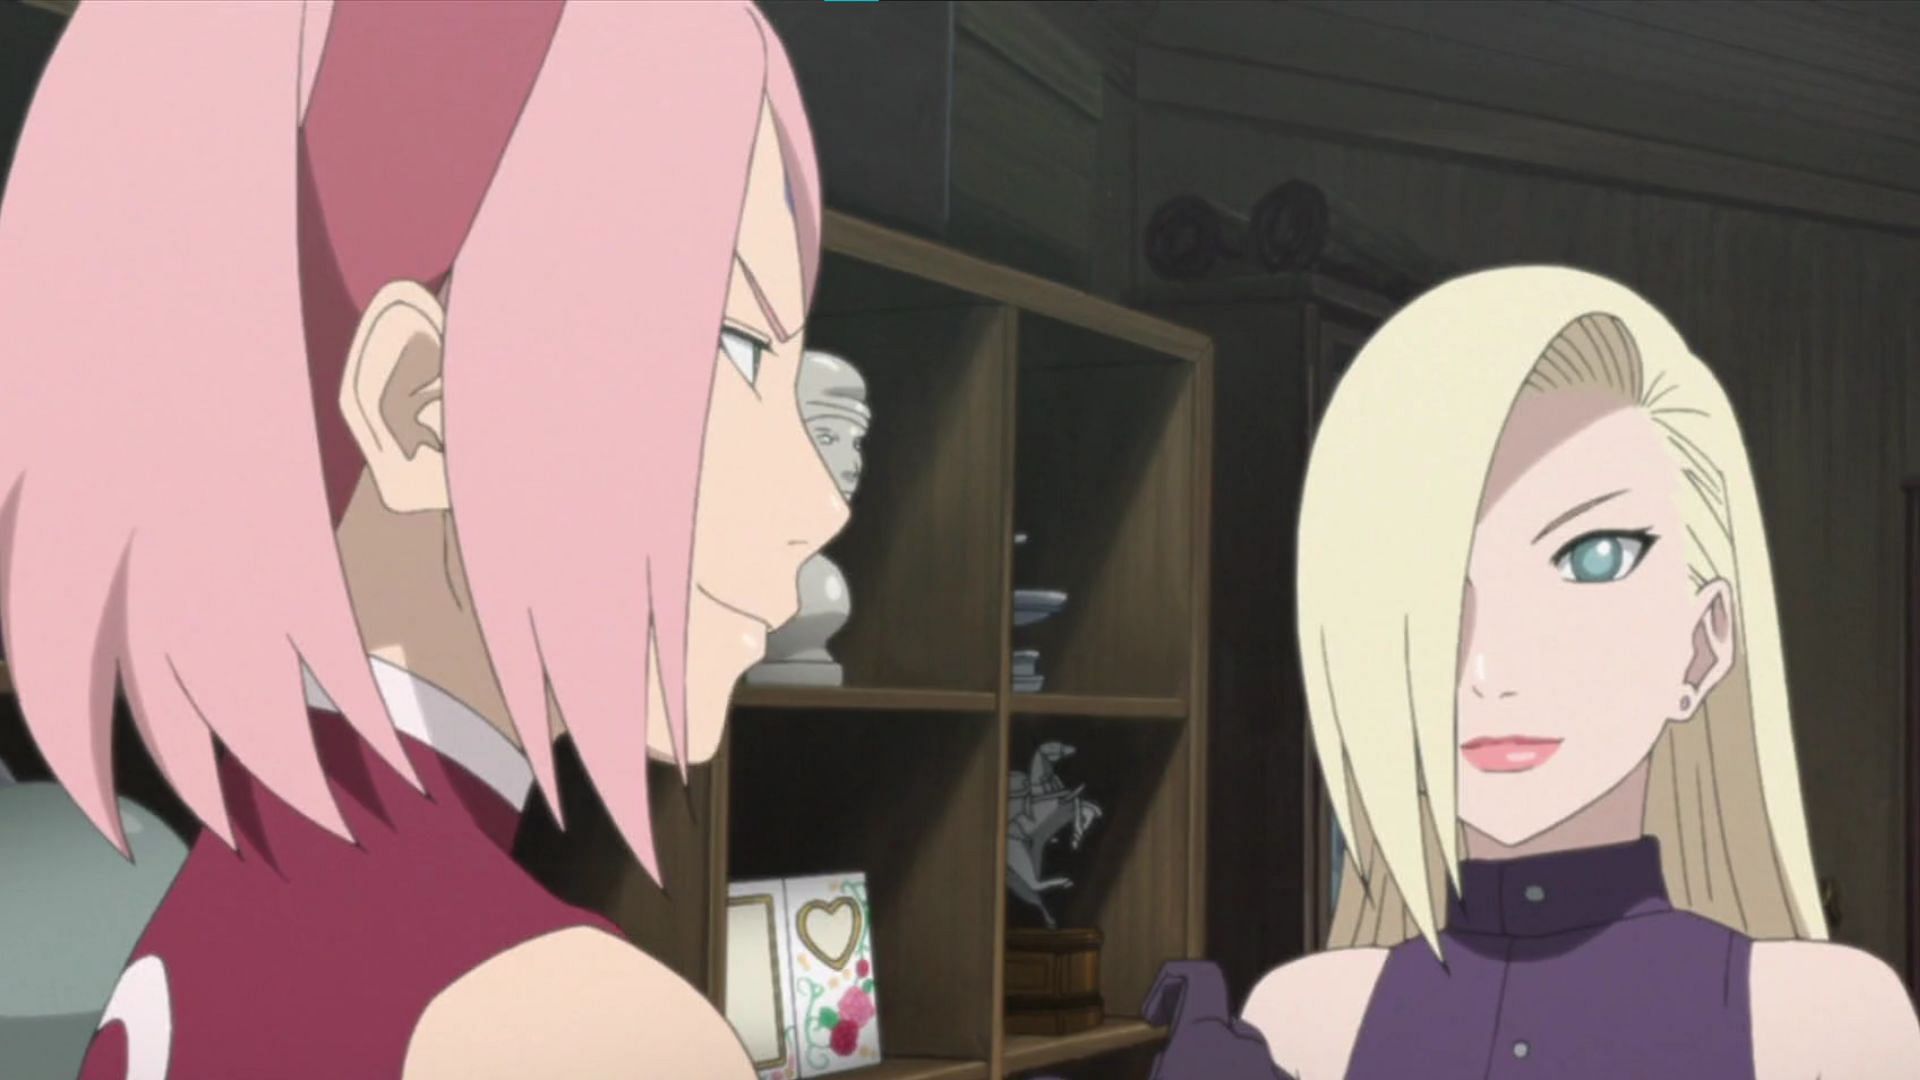 Naruto: Ino Yamanaka vs Sakura (Image via Studio Pierrot)